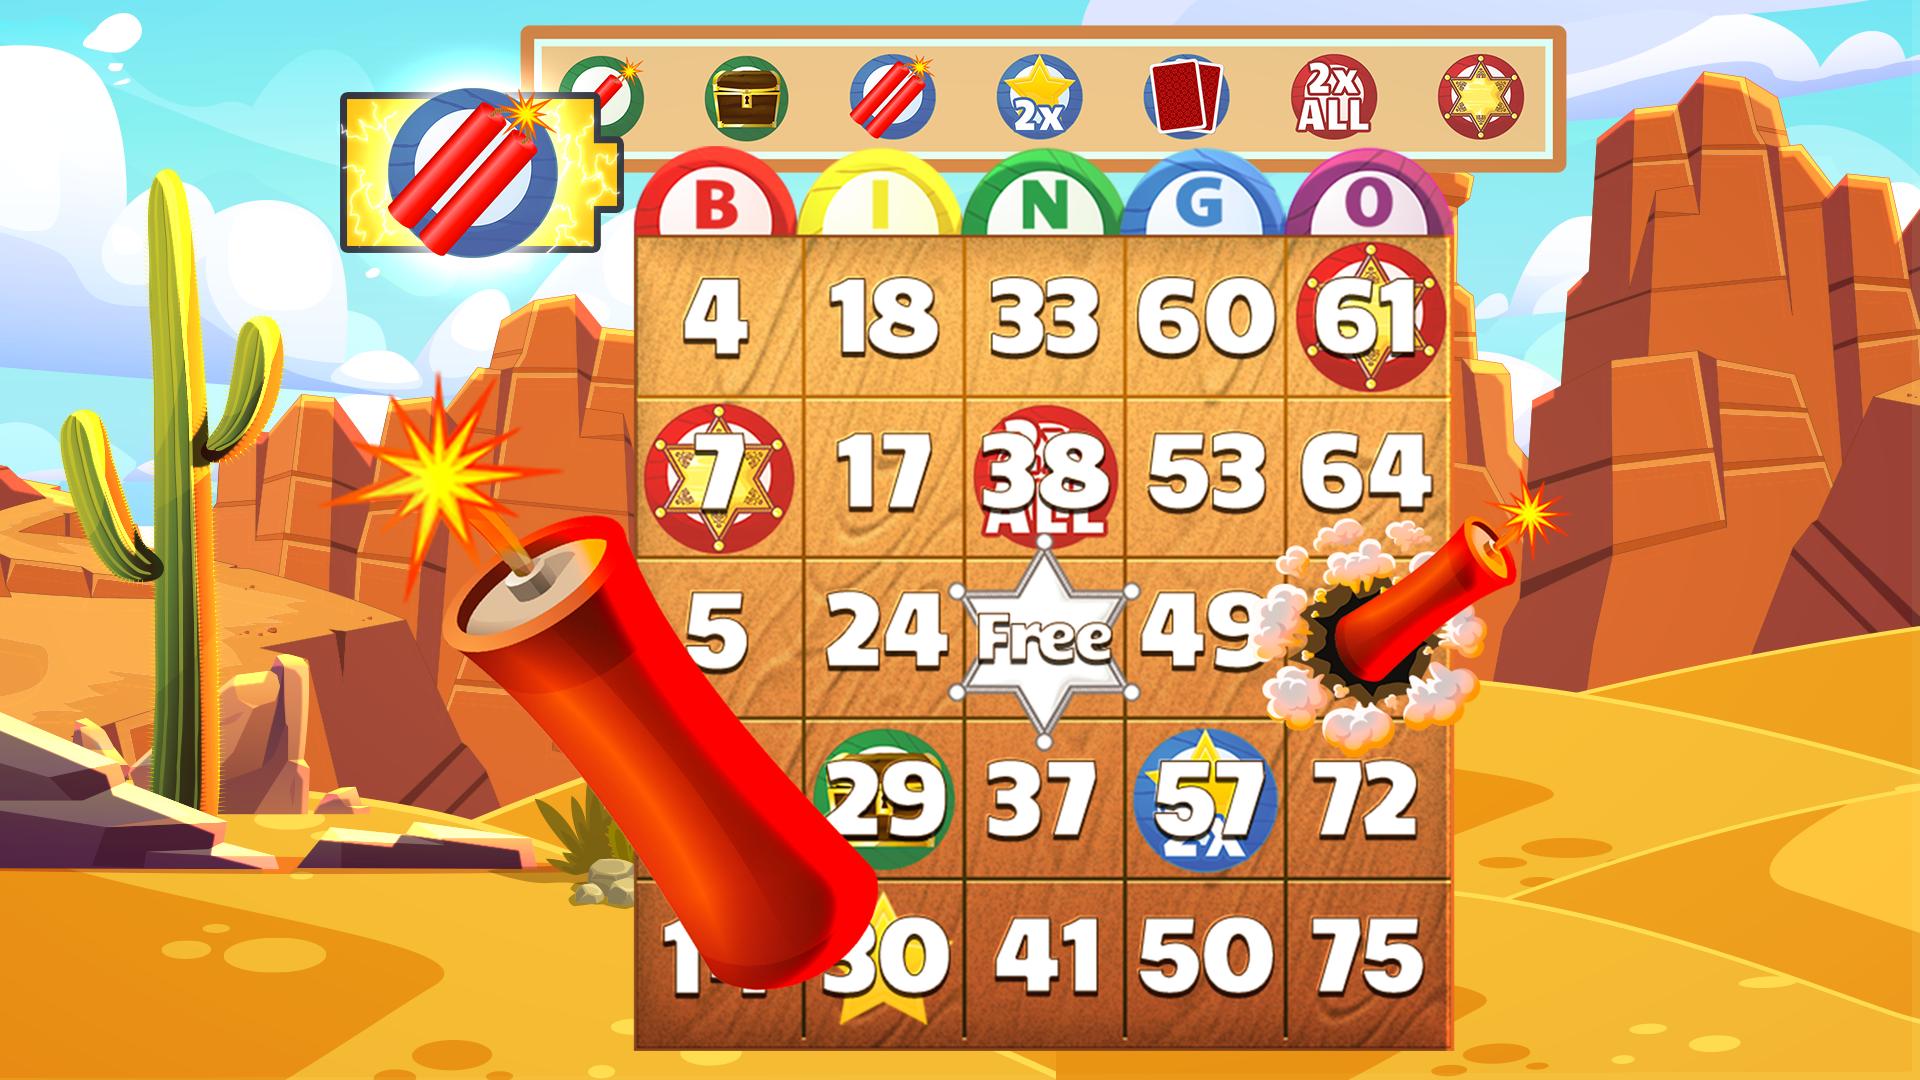 Bingo Showdown Free Bingo Games – Bingo Live Game 438.0.1 Screenshot 4